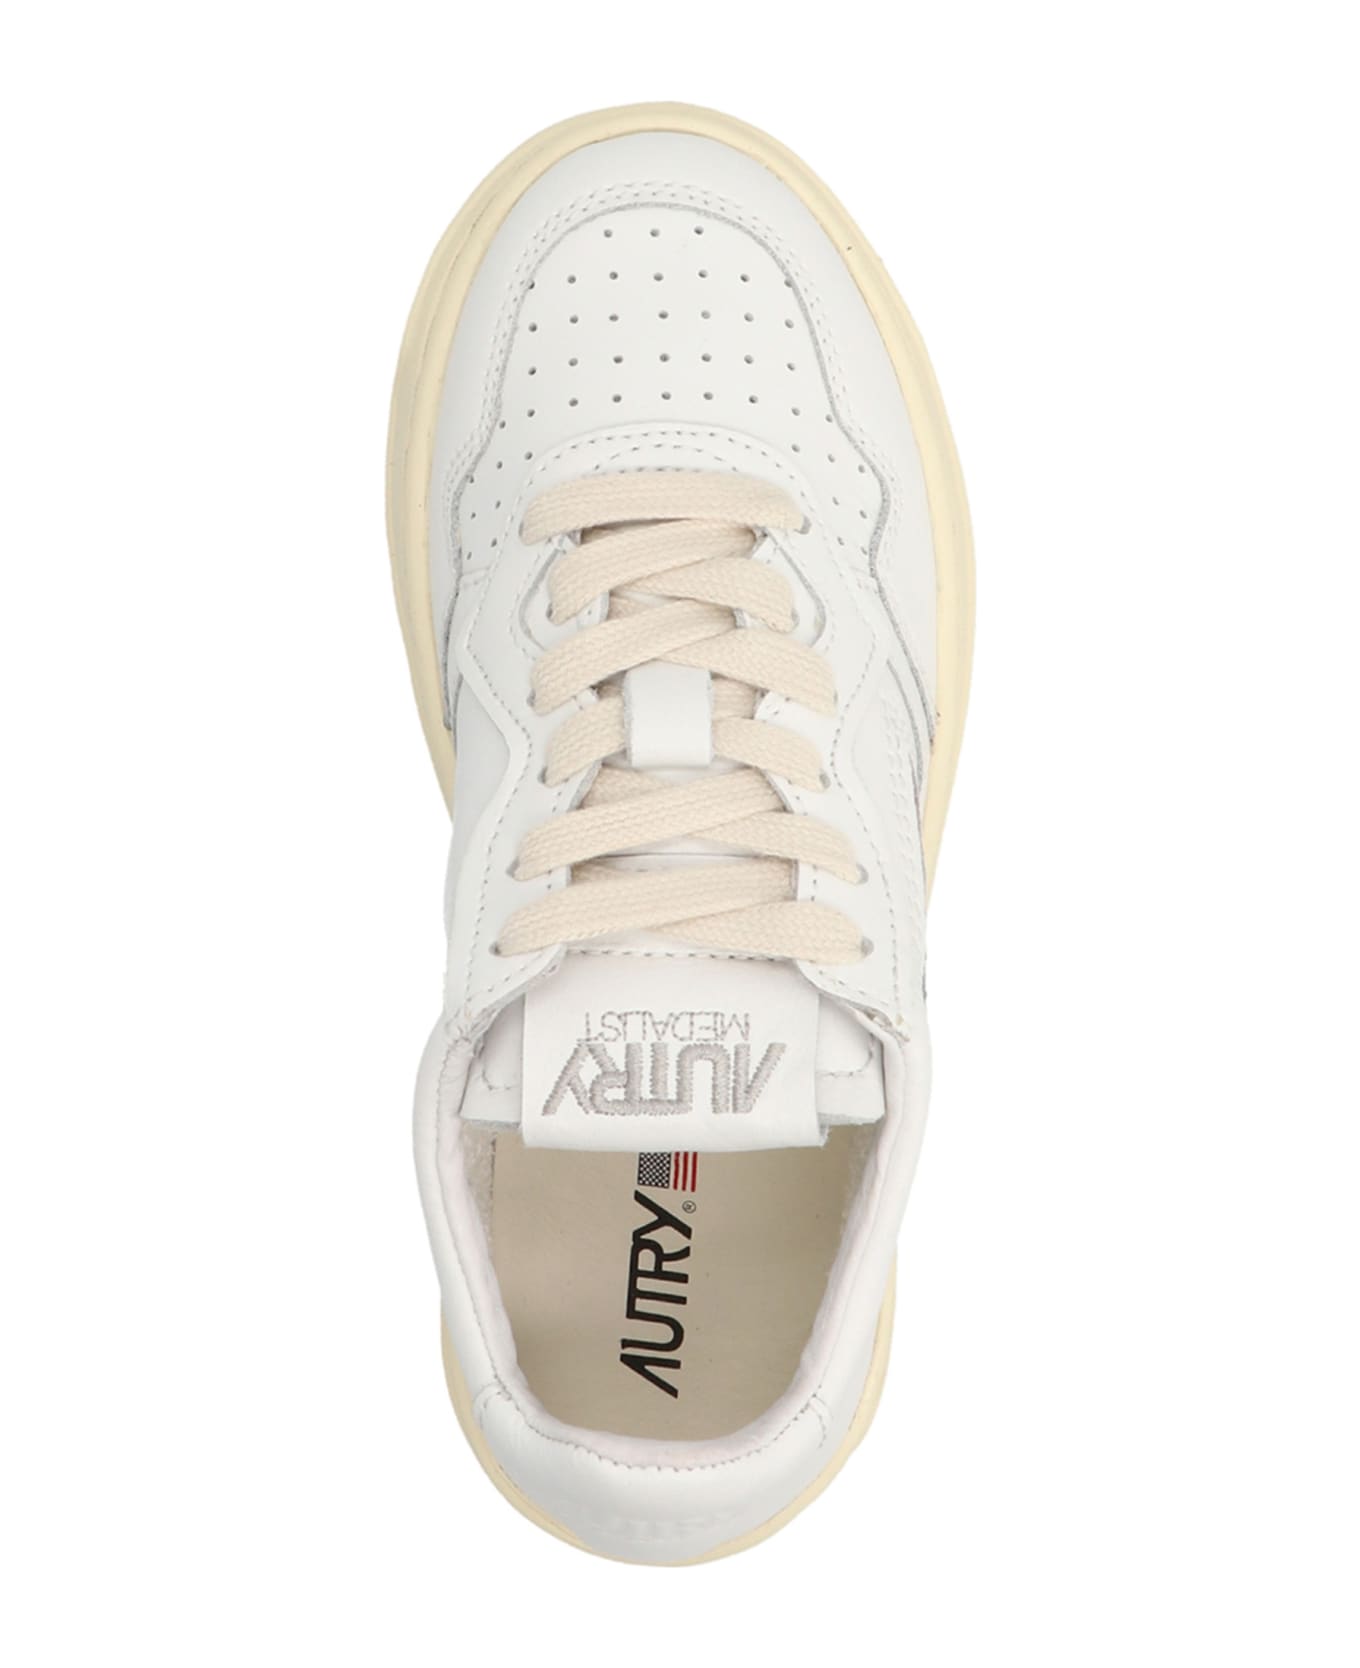 Autry 'autry' Sneakers - White シューズ